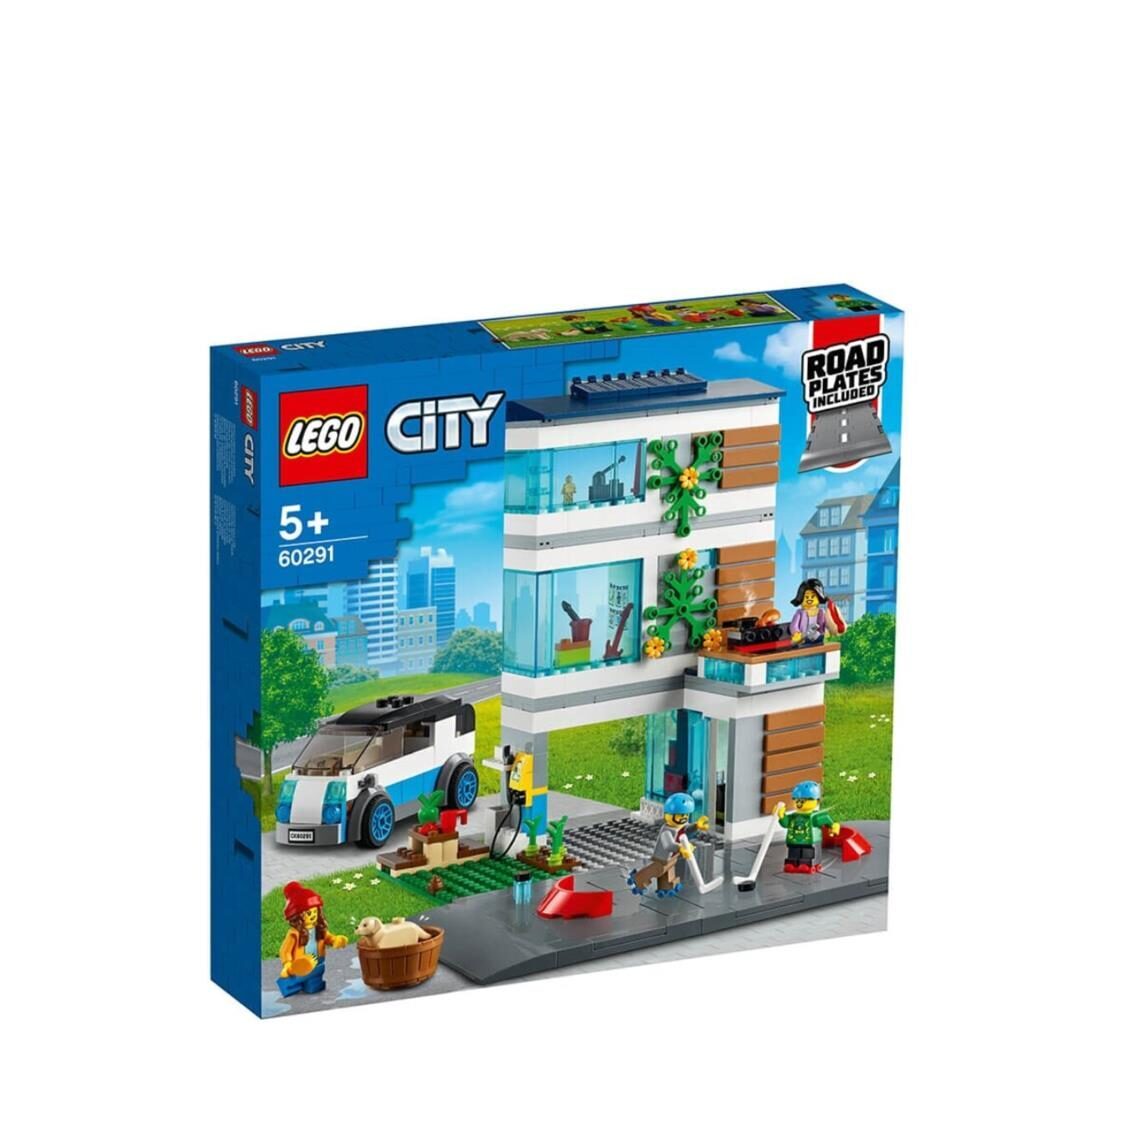 LEGO City - Family House 60291